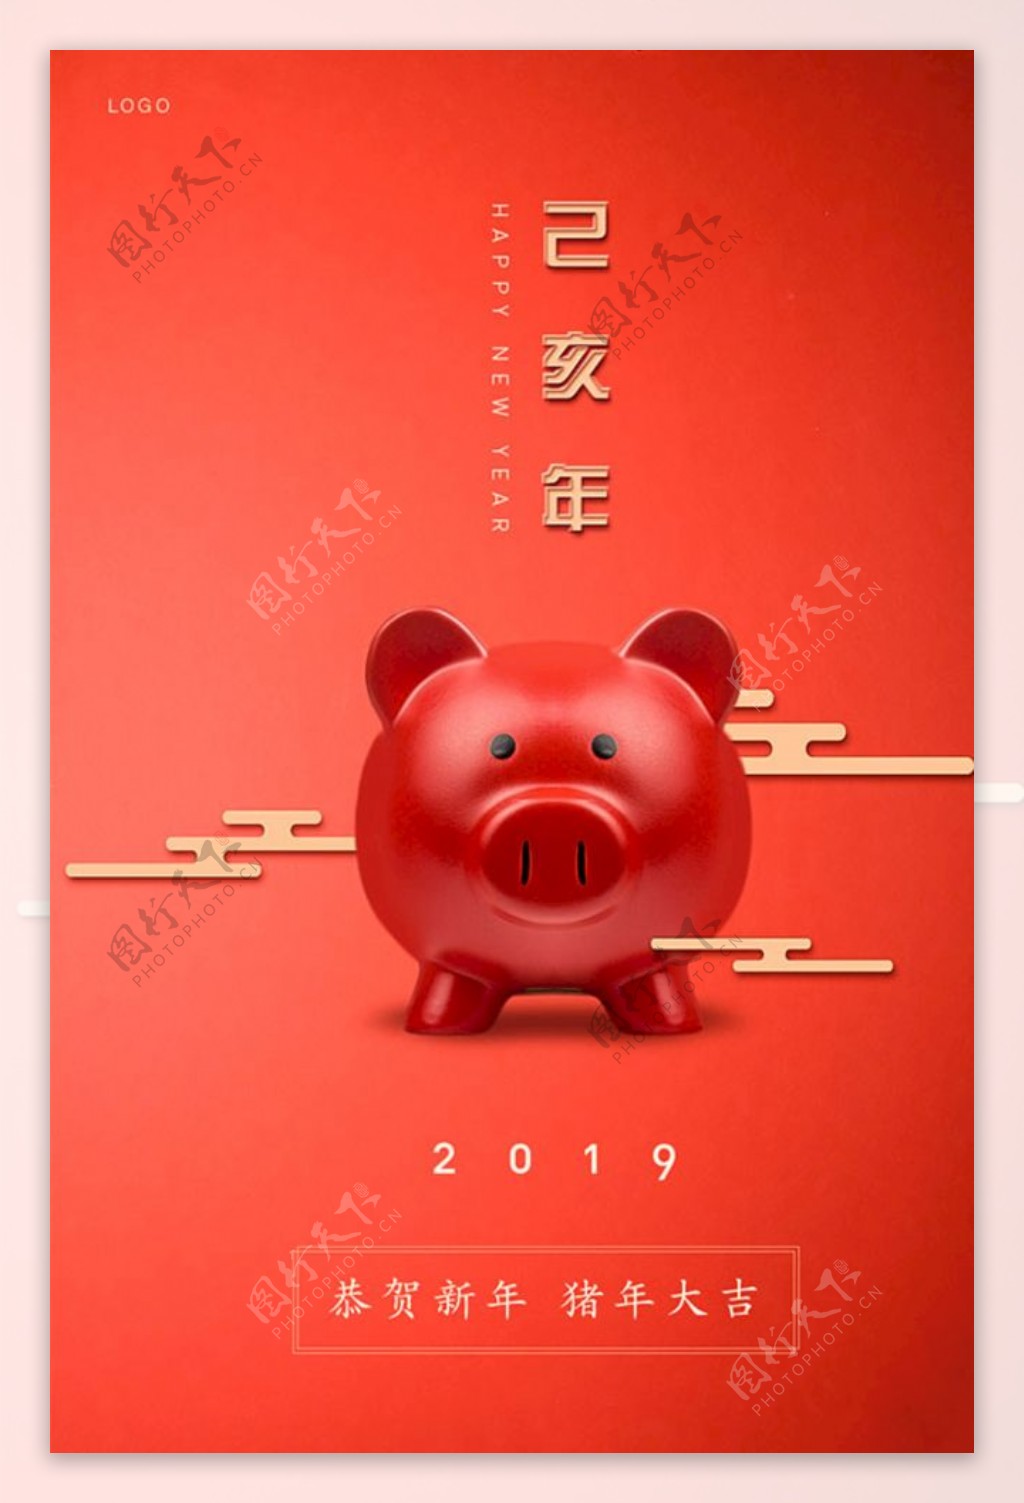 猪年元旦春节海报